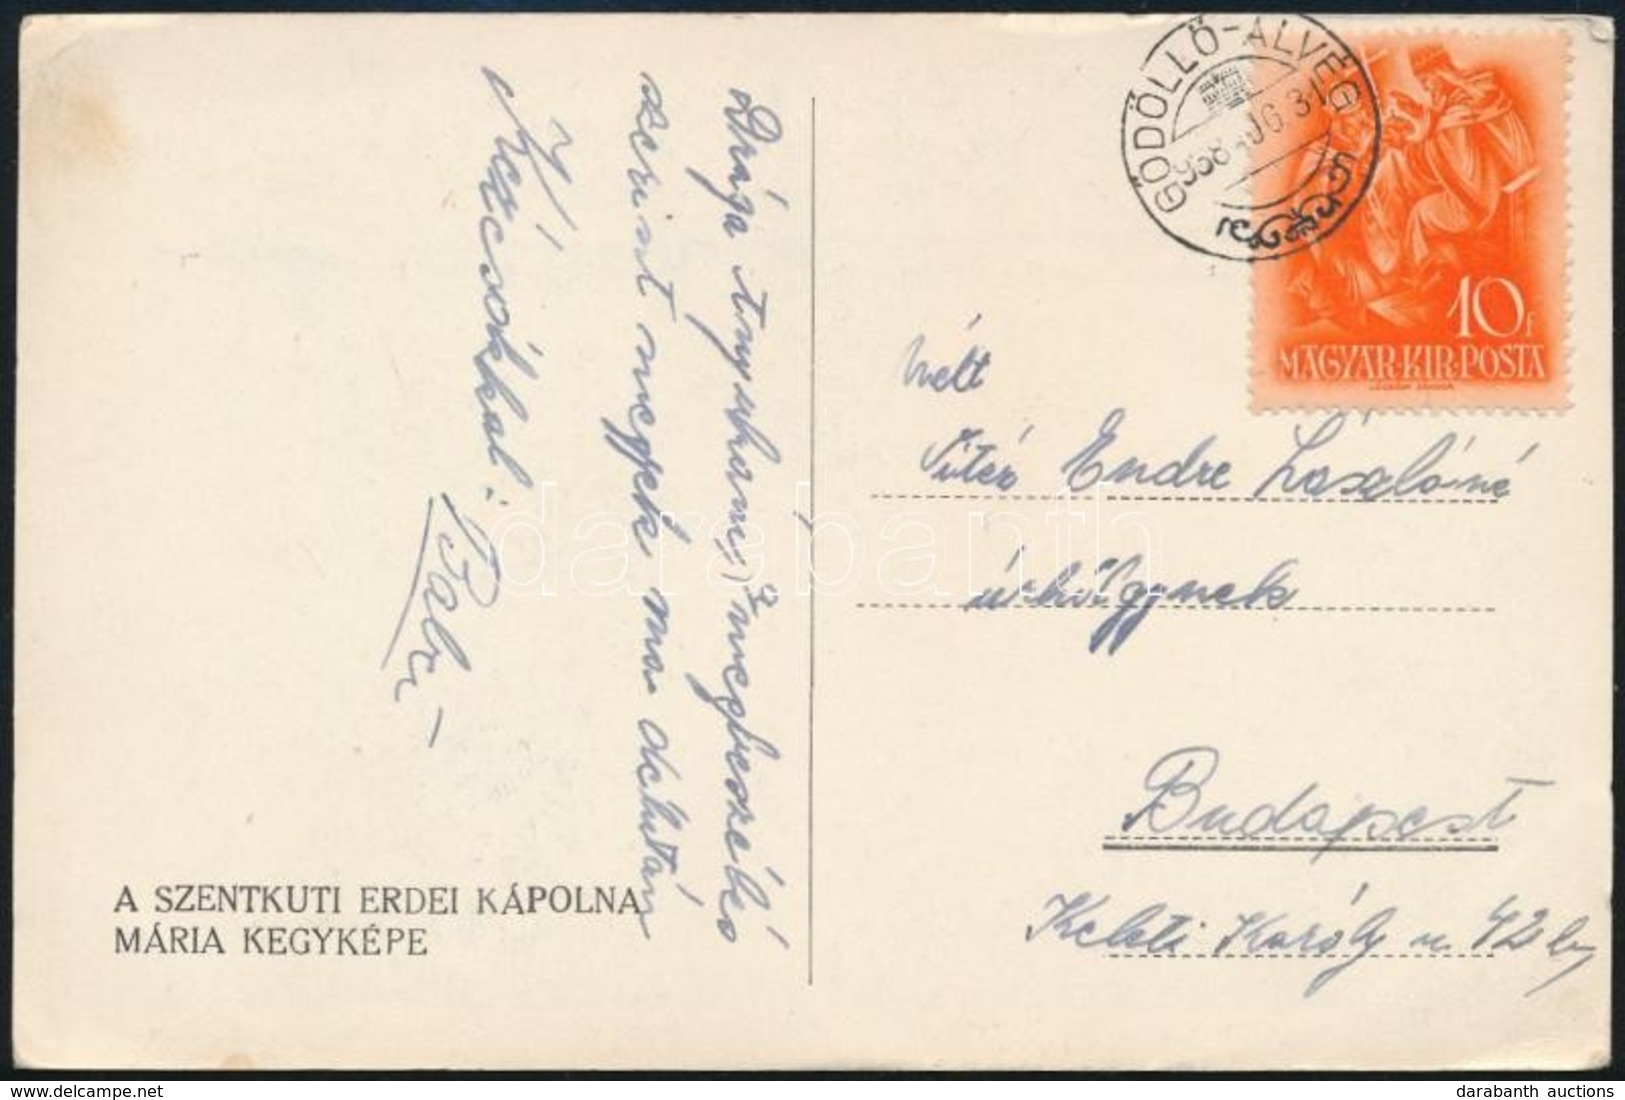 1938 Levelezőlap Vitéz Endre László, Későbbi Nyilas Miniszter Lányától, Feleségének. - Unclassified